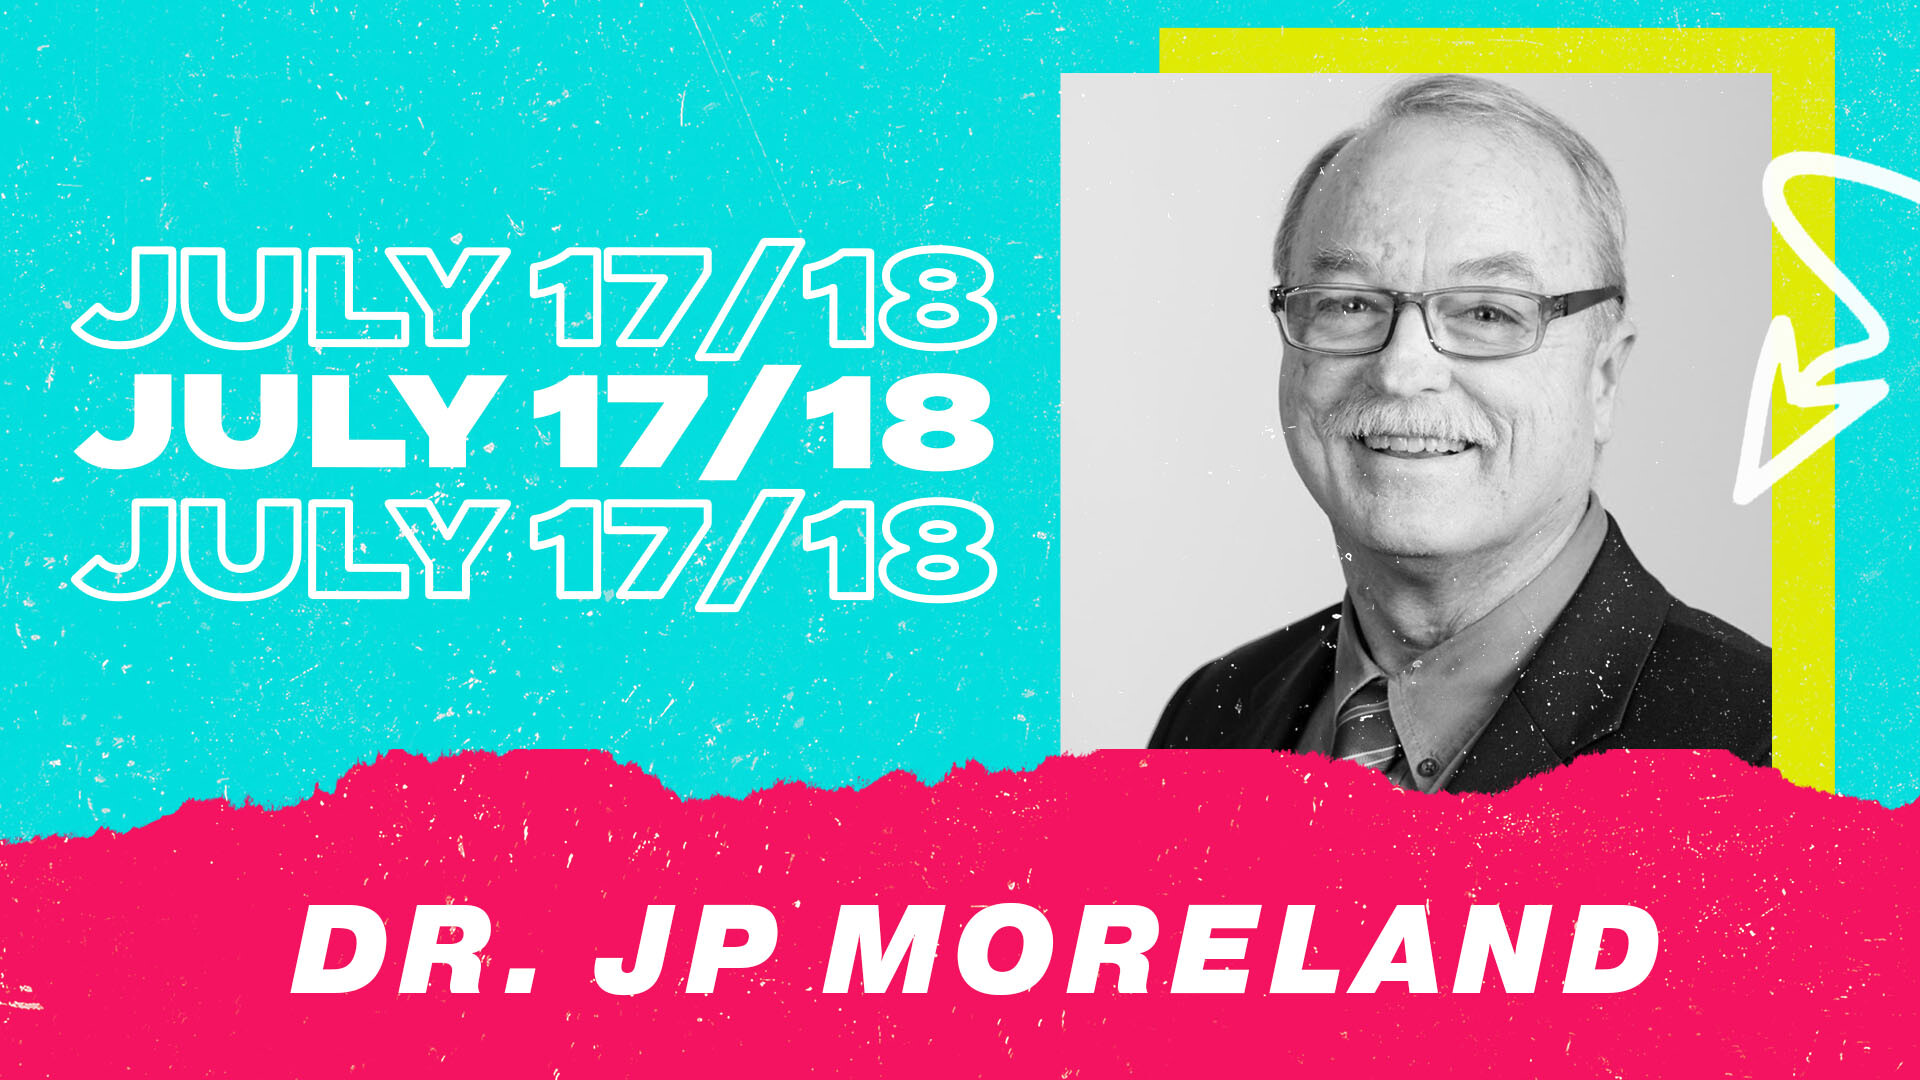 GUEST SPEAKER: Dr. JP Moreland